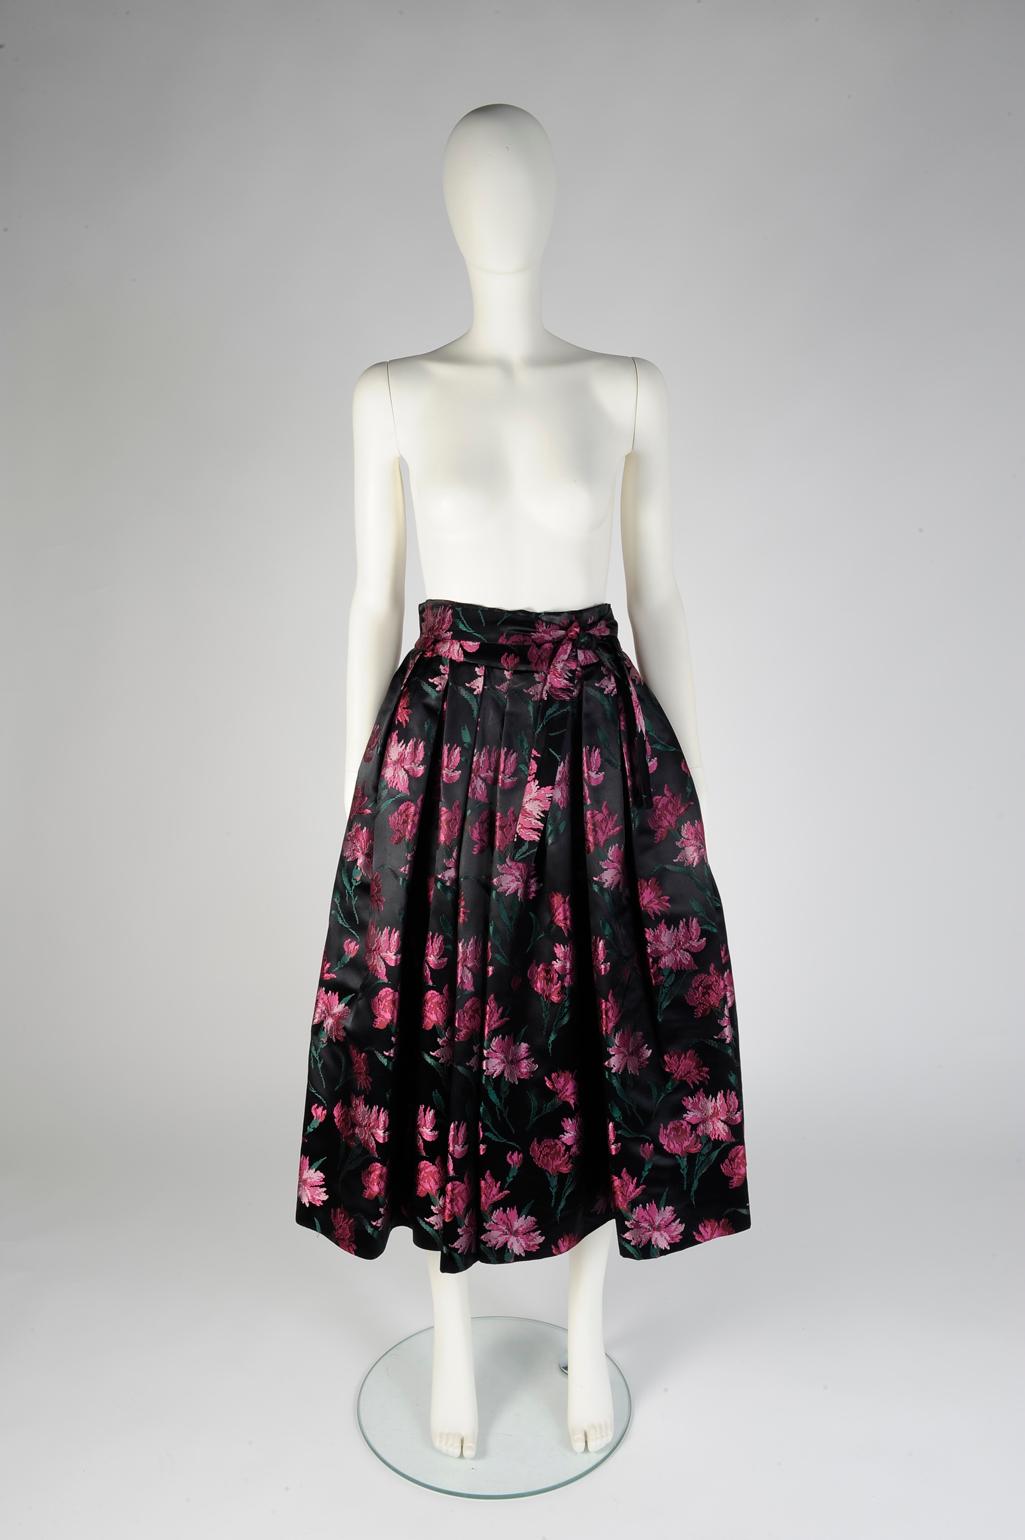 Dieser seltene Midirock von Christian Dior aus den frühen 50er Jahren ist leicht ausgestellt und verfügt über einen hochgezogenen Bund und einen tonalen Schärpengürtel. Dieser Rock aus glänzendem Seidendamast zeigt raffinierte rosa Nelken auf